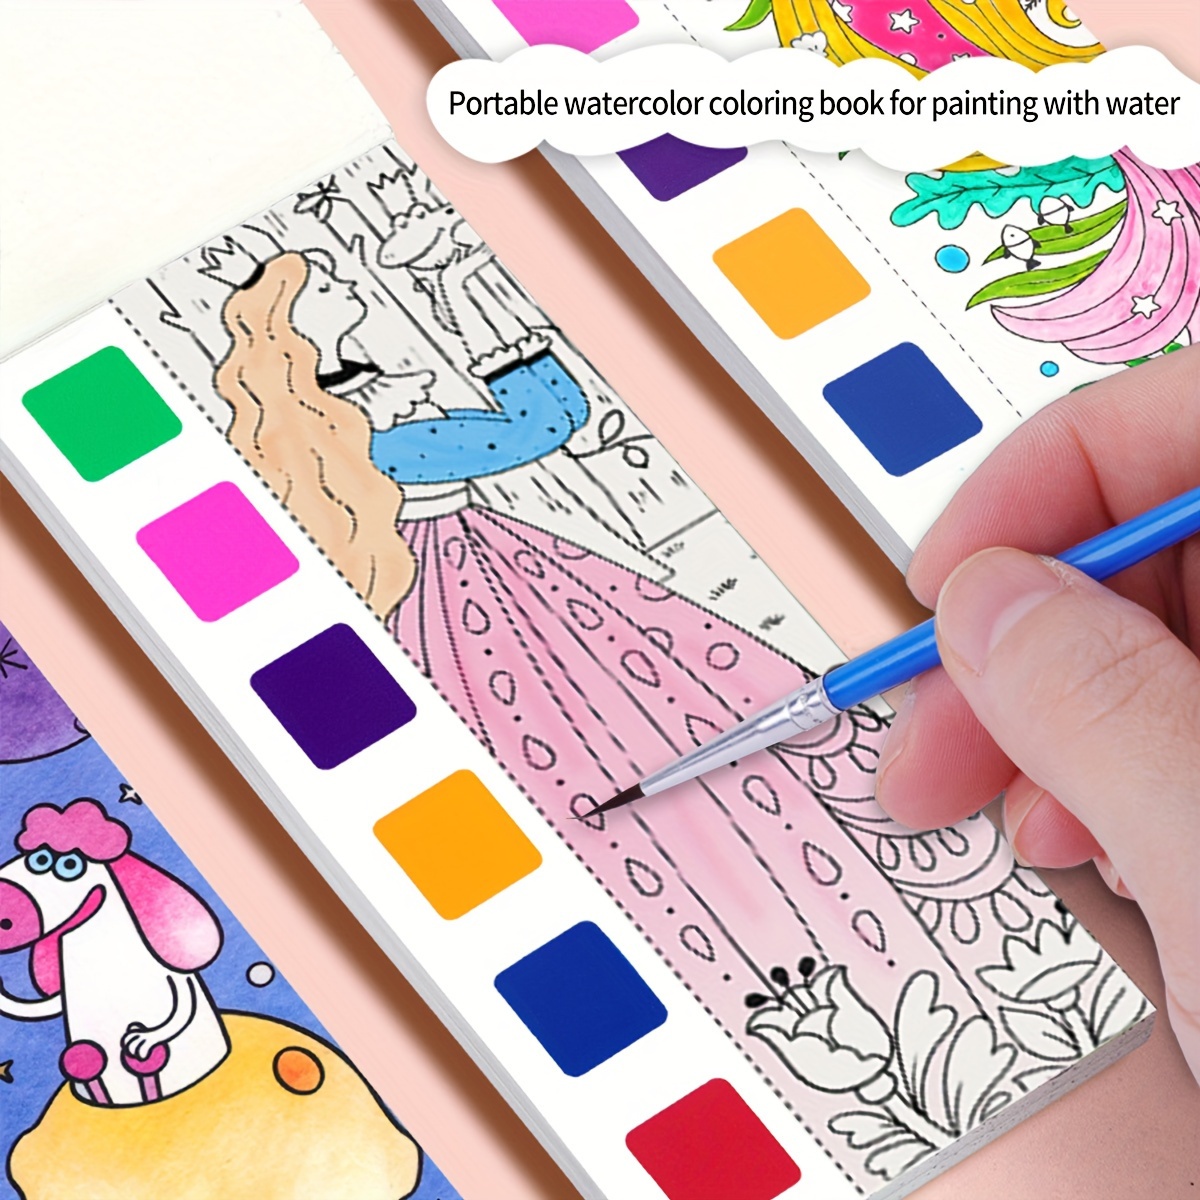 Halloween livre de coloriage enfant 8-12 ans: Cahier de Coloriage